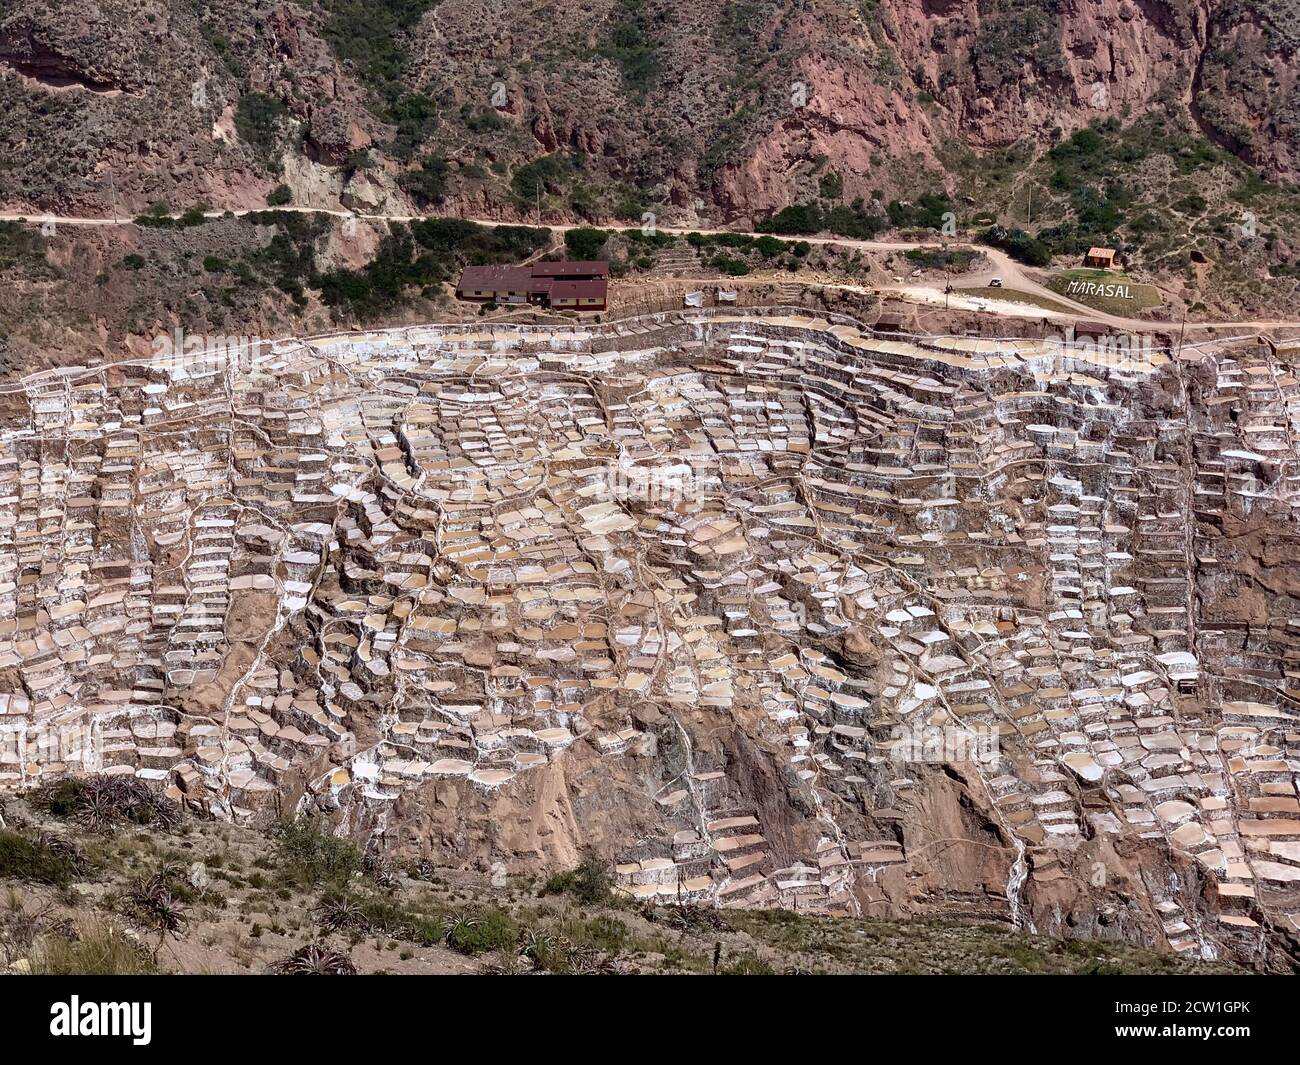 Salzbergwerke in Peru. Malerische Salineras de Maras. Atemberaubende Naturlandschaft in den Anden. Tausende von Salzteichen. Kaskade geometrische Salzbecken. Stockfoto